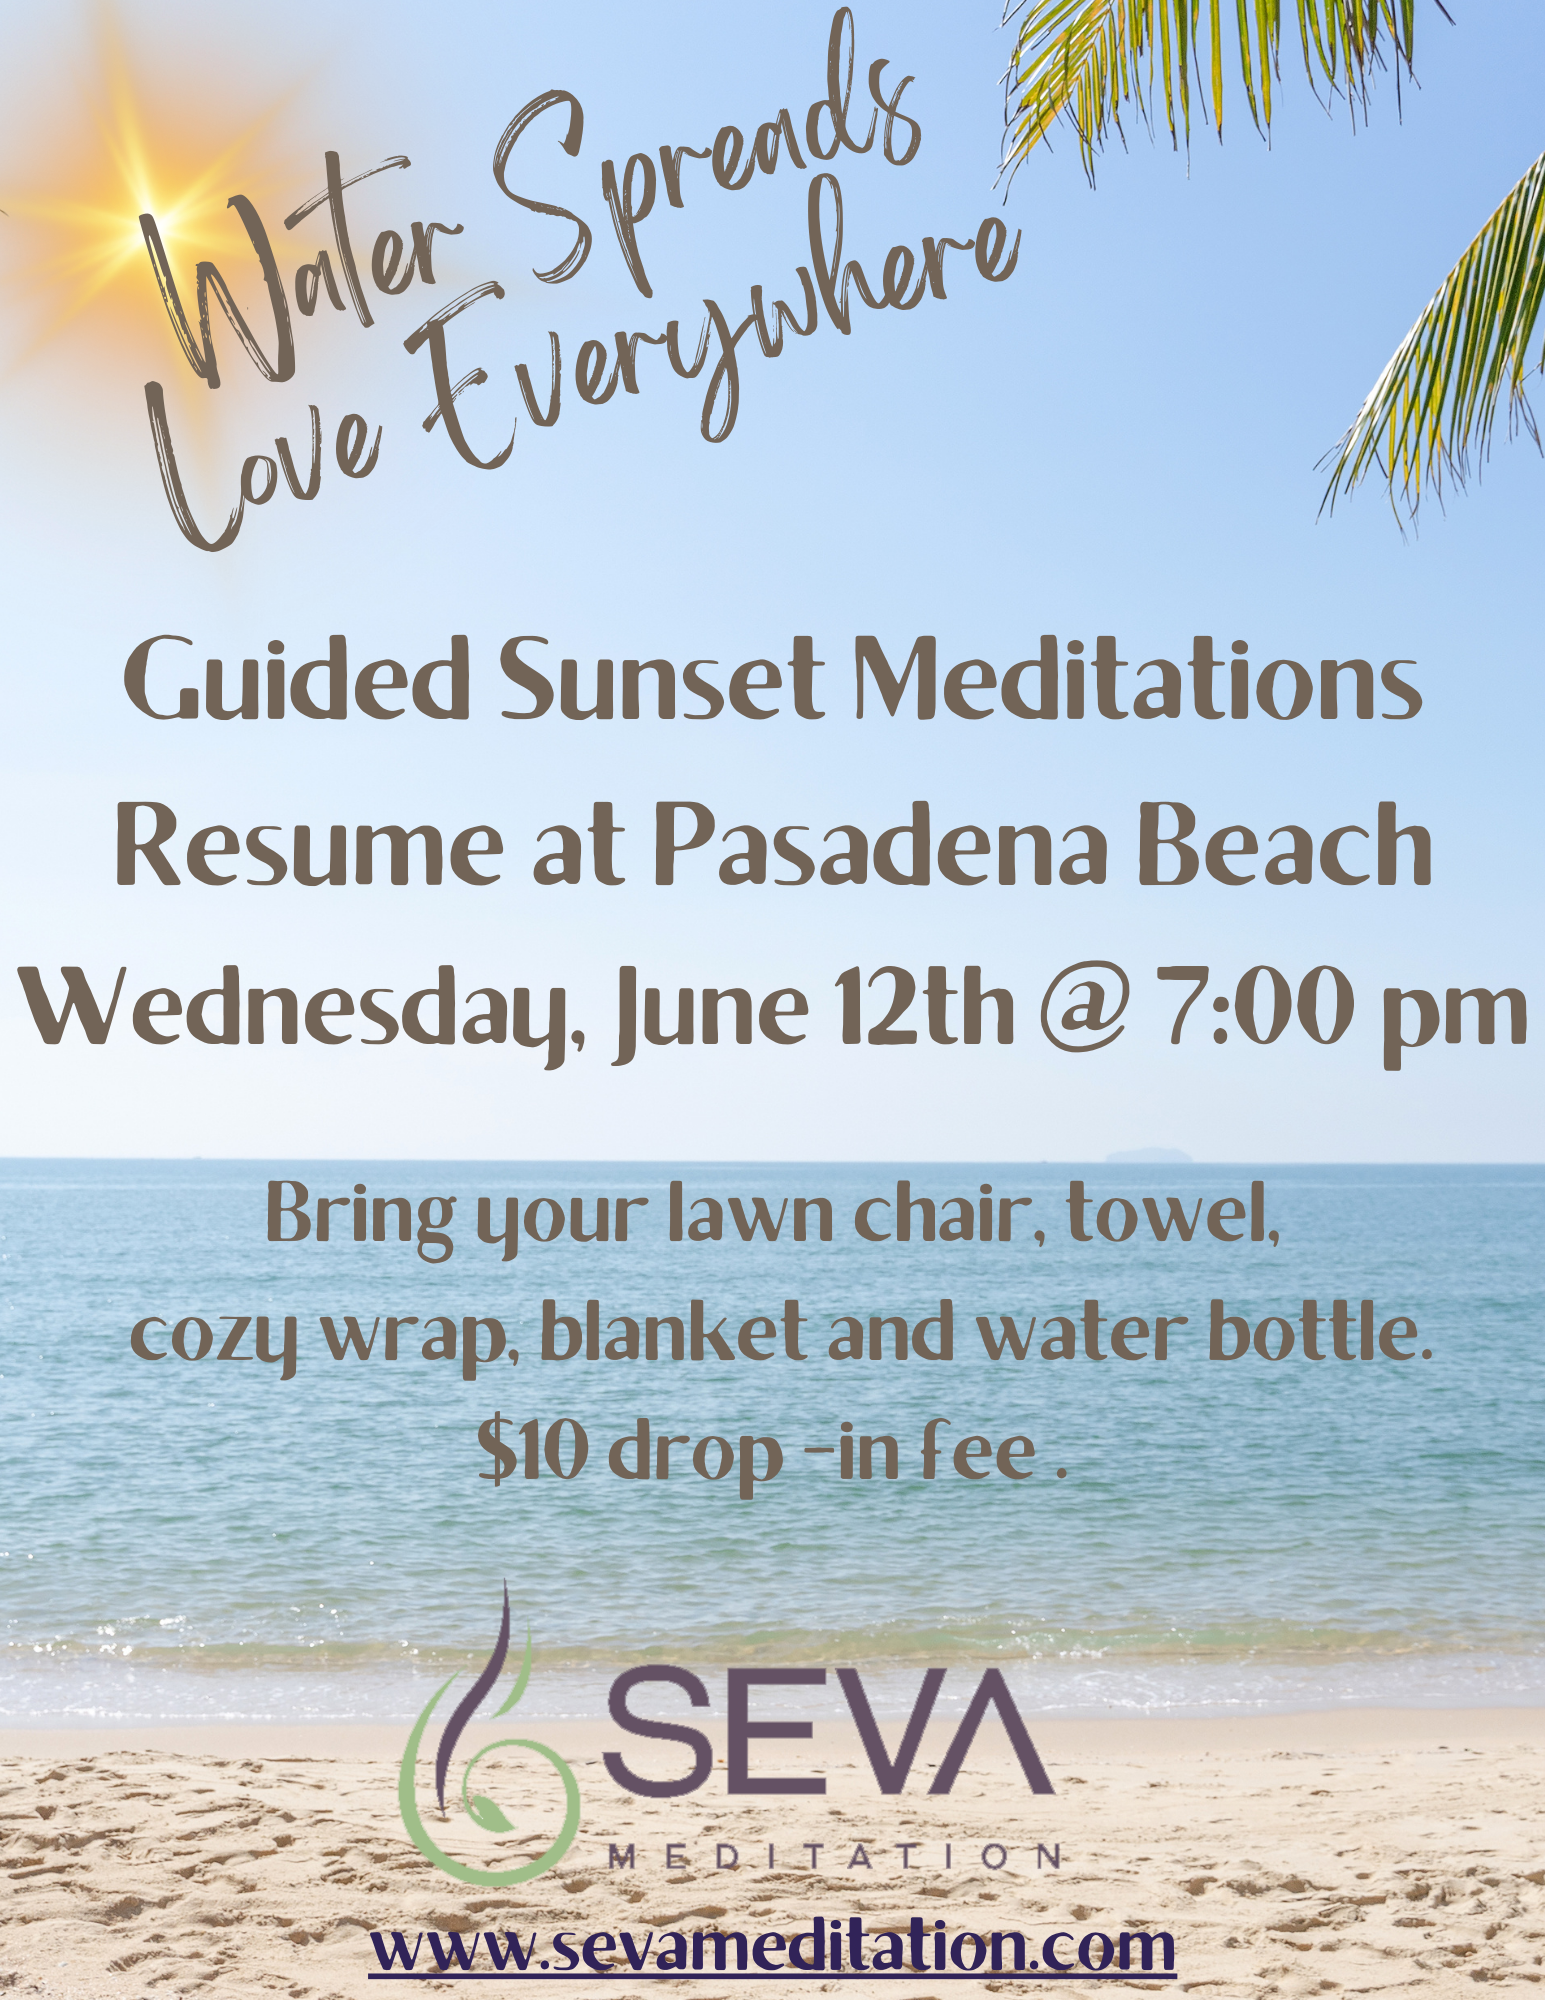 Weekly Guided Sunset Meditations Resume at Pasadena Beach, NL